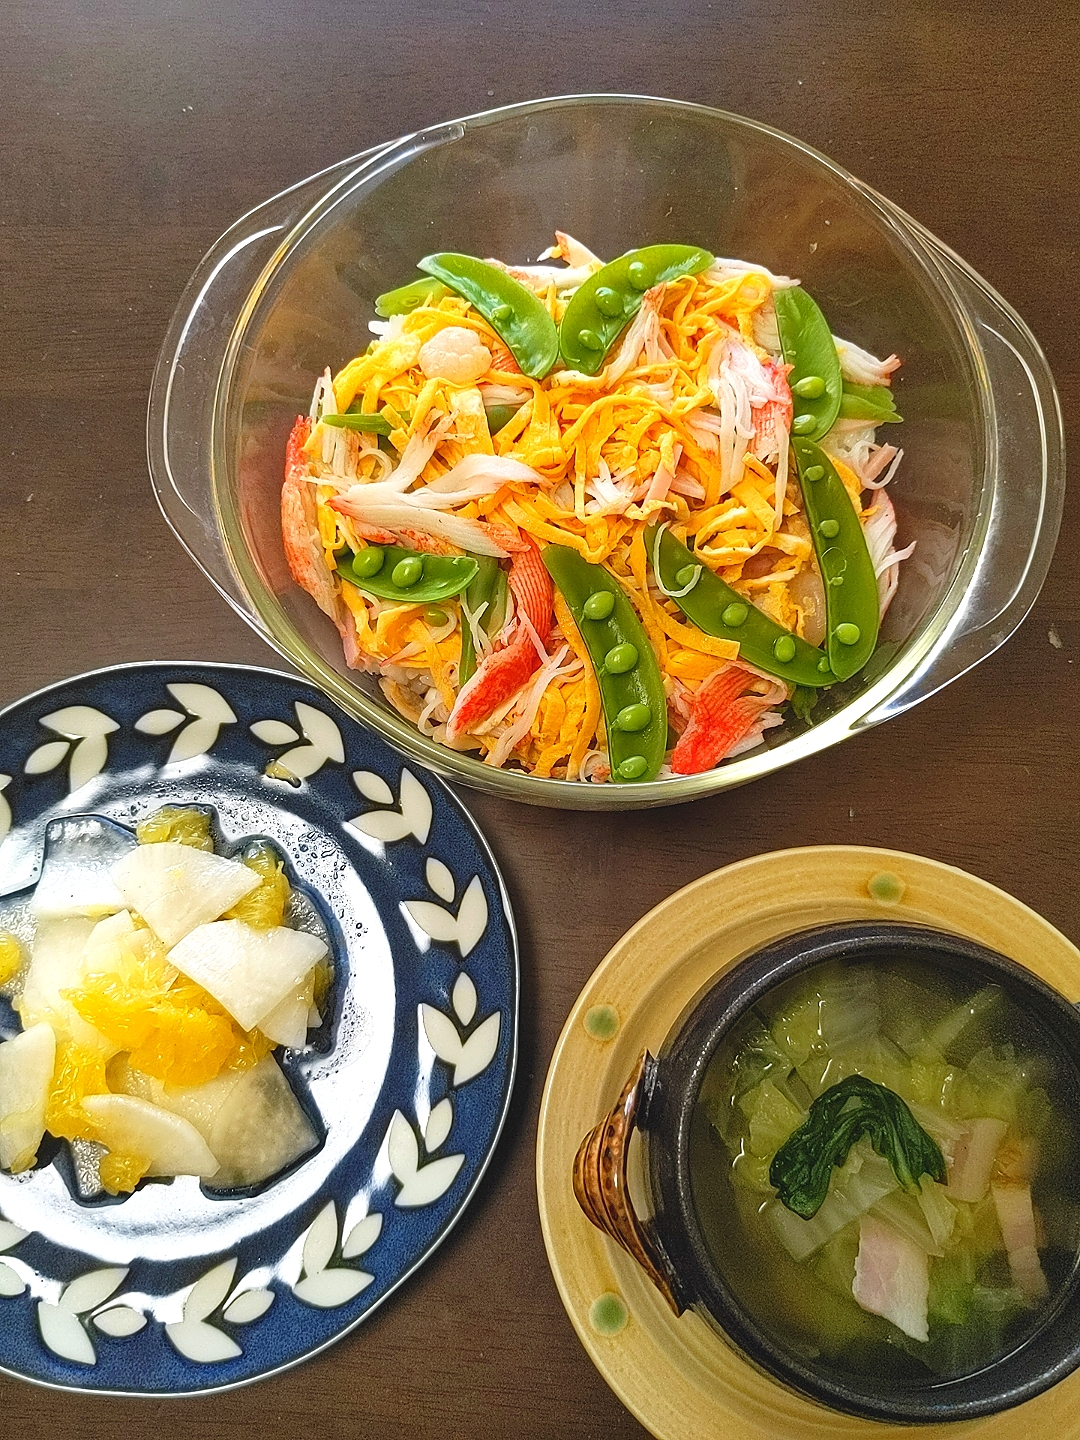 シーフードミックスの洋風ちらし寿司
甘夏と大根のサラダ
白菜とベーコンのコンソメスープ